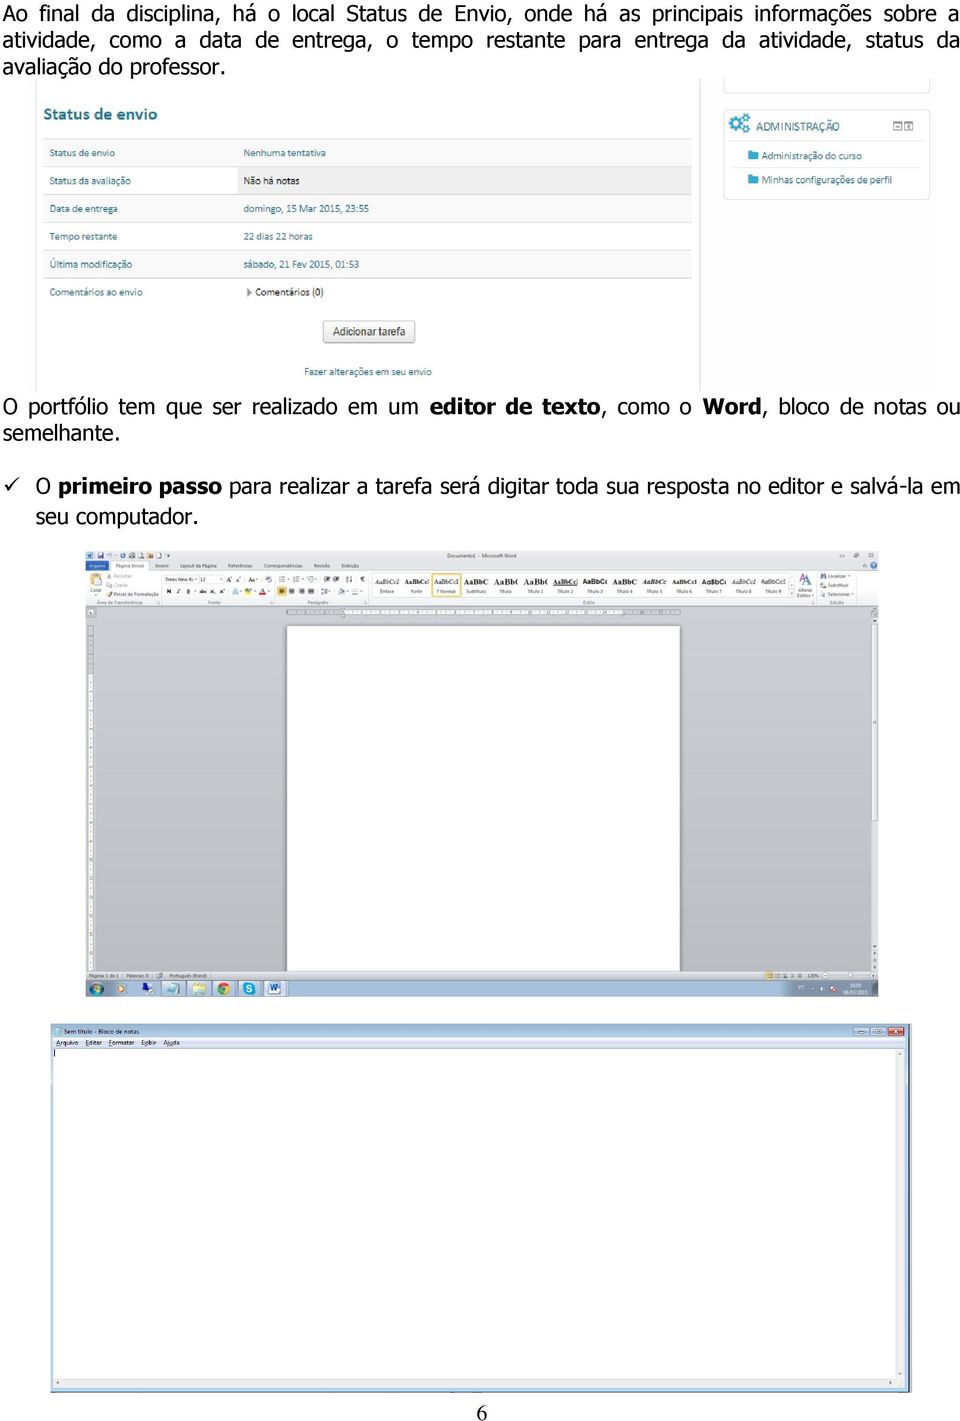 O portfólio tem que ser realizado em um editor de texto, como o Word, bloco de notas ou semelhante.